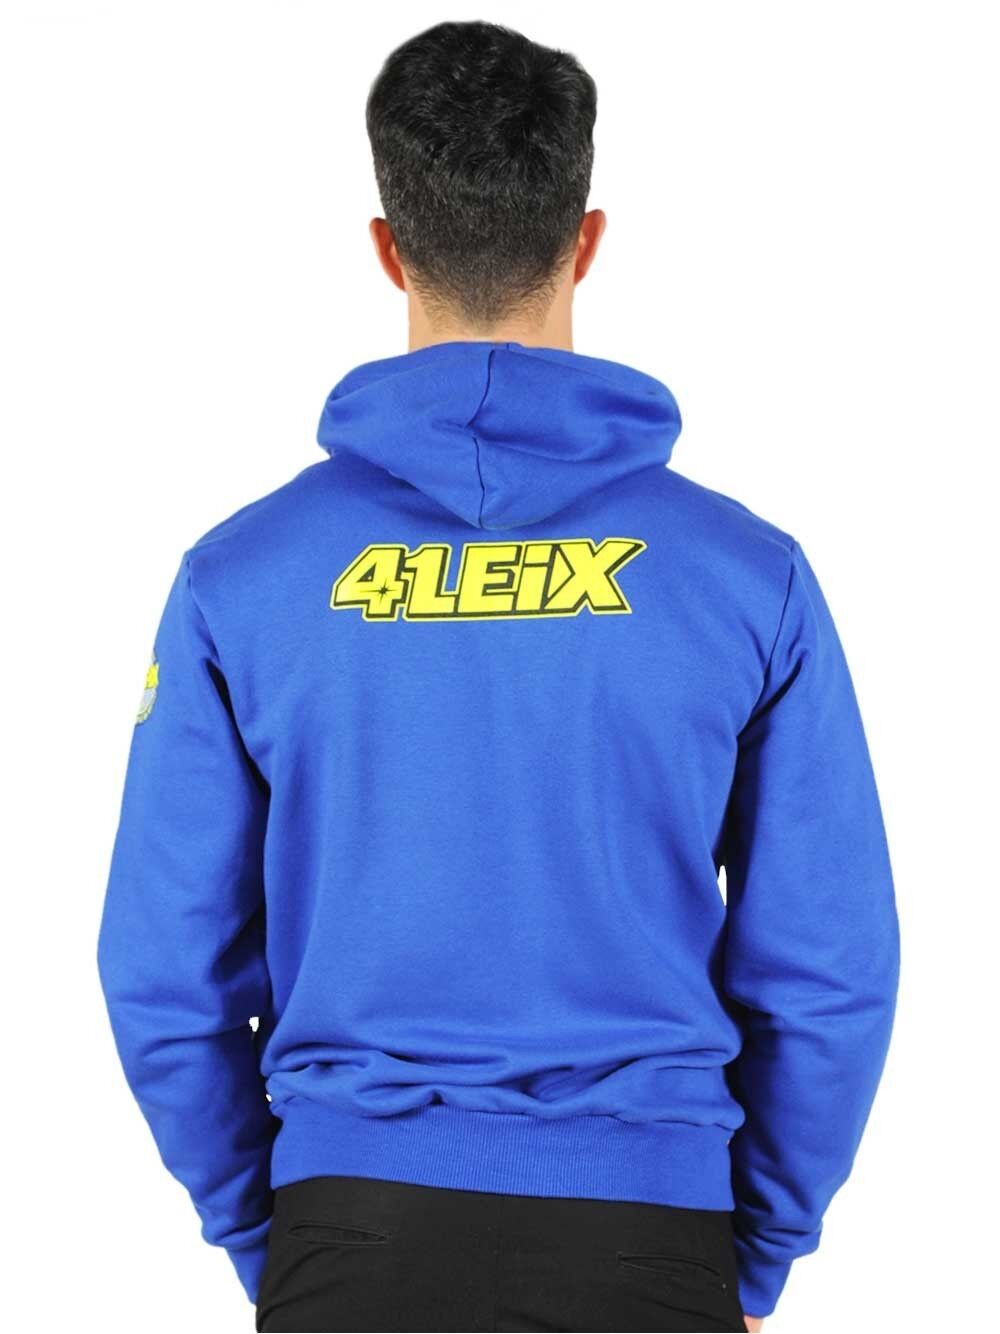 Official Aleix Espargaro Mans 41 Hoddie. - 16 22301